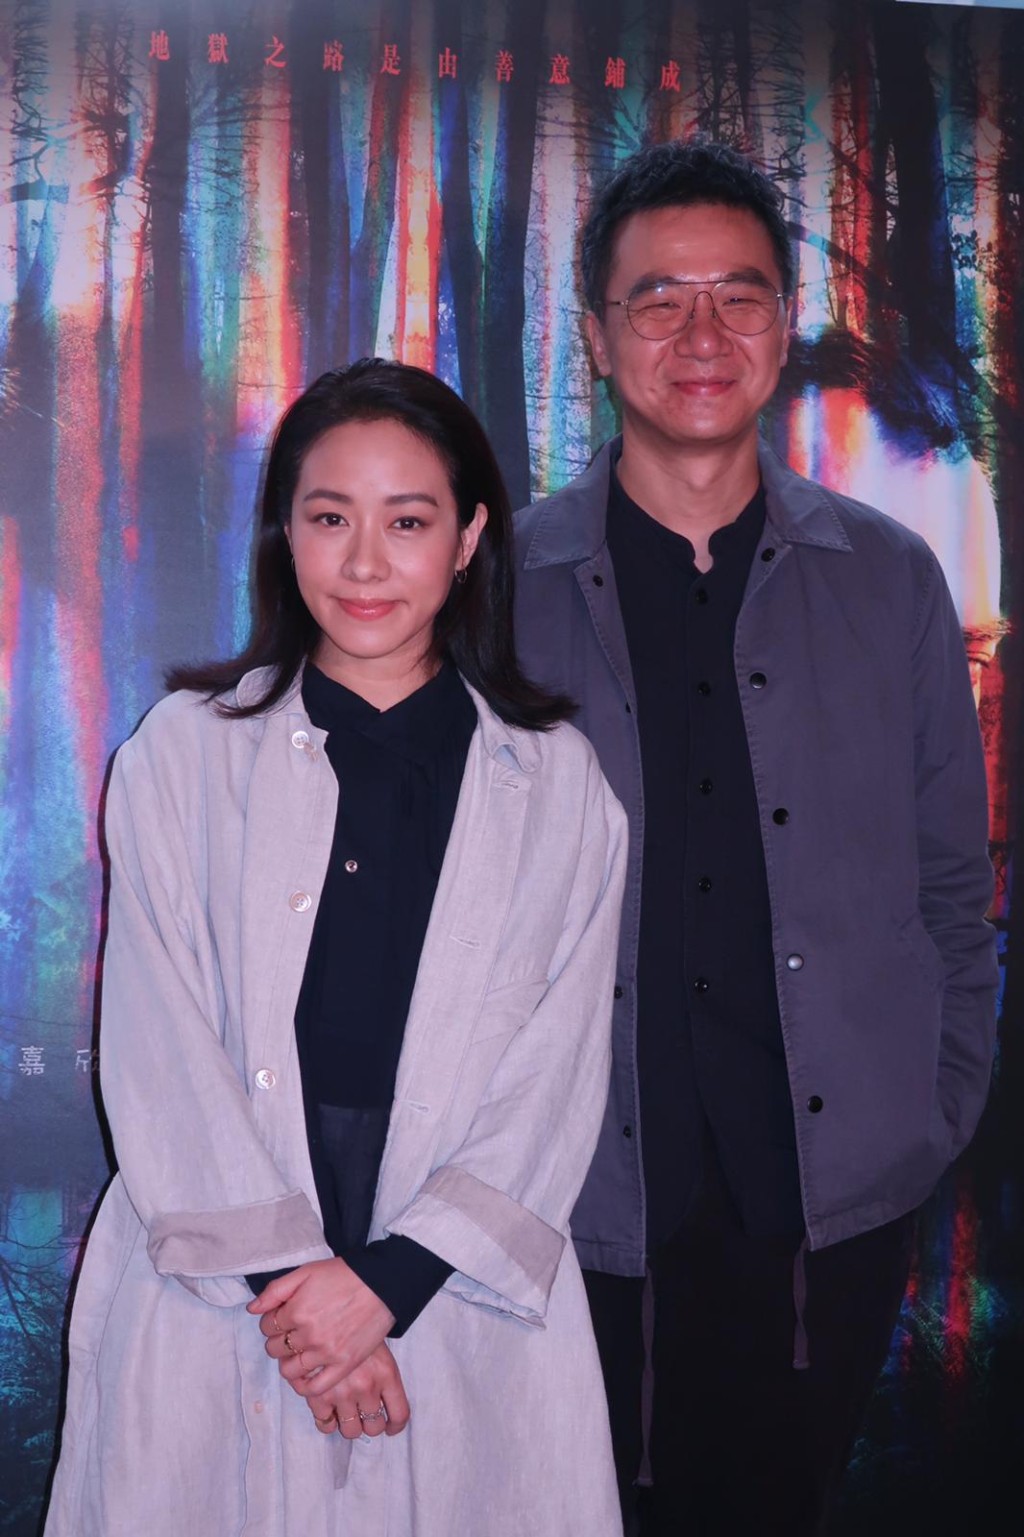 林嘉欣与袁剑伟2010年奉子成婚。